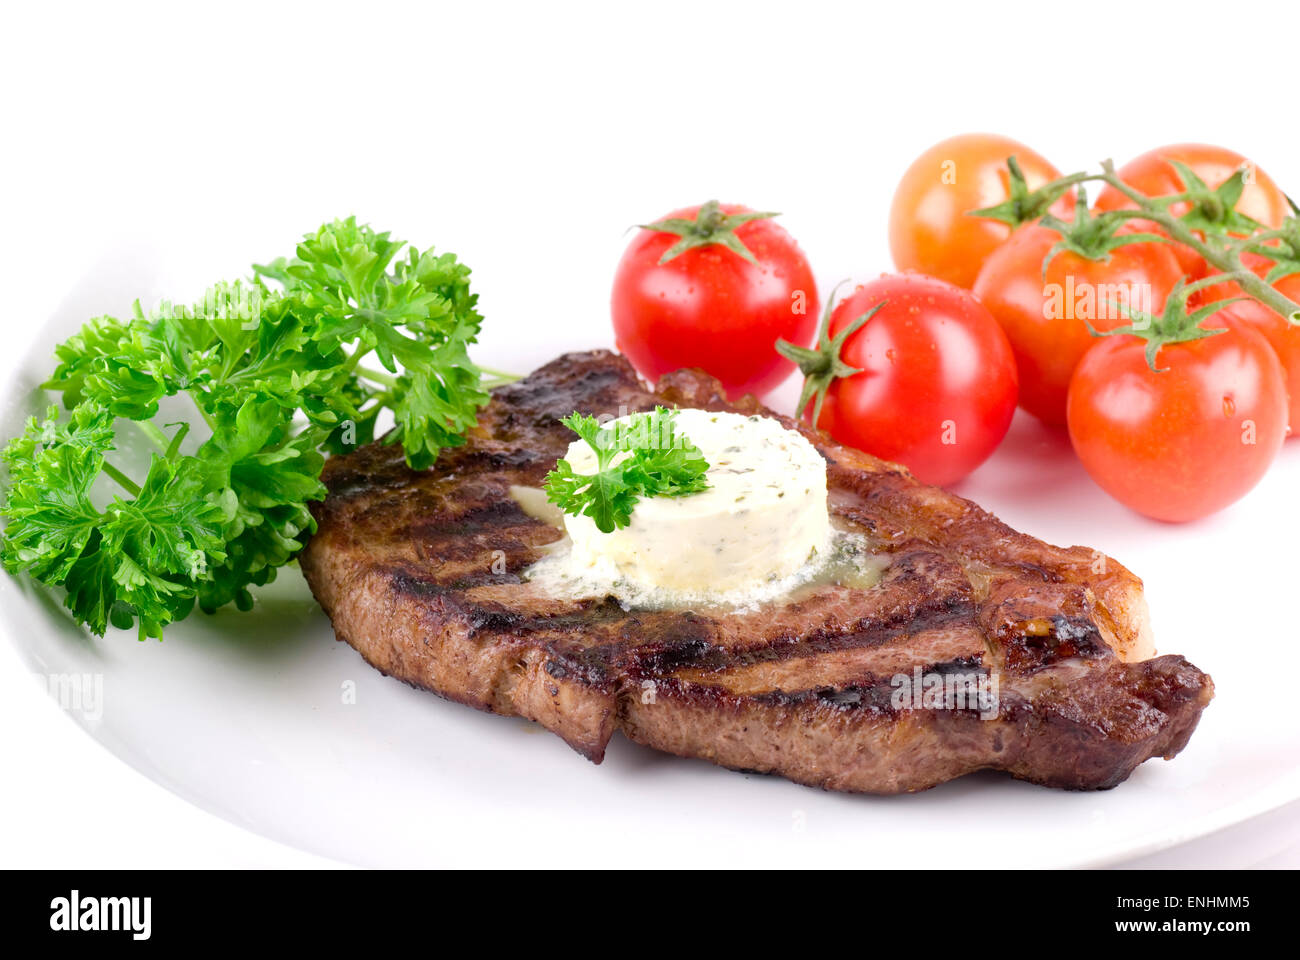 Strip steak de persil beurre sur une assiette blanche. Garnir de persil et les tomates. Banque D'Images